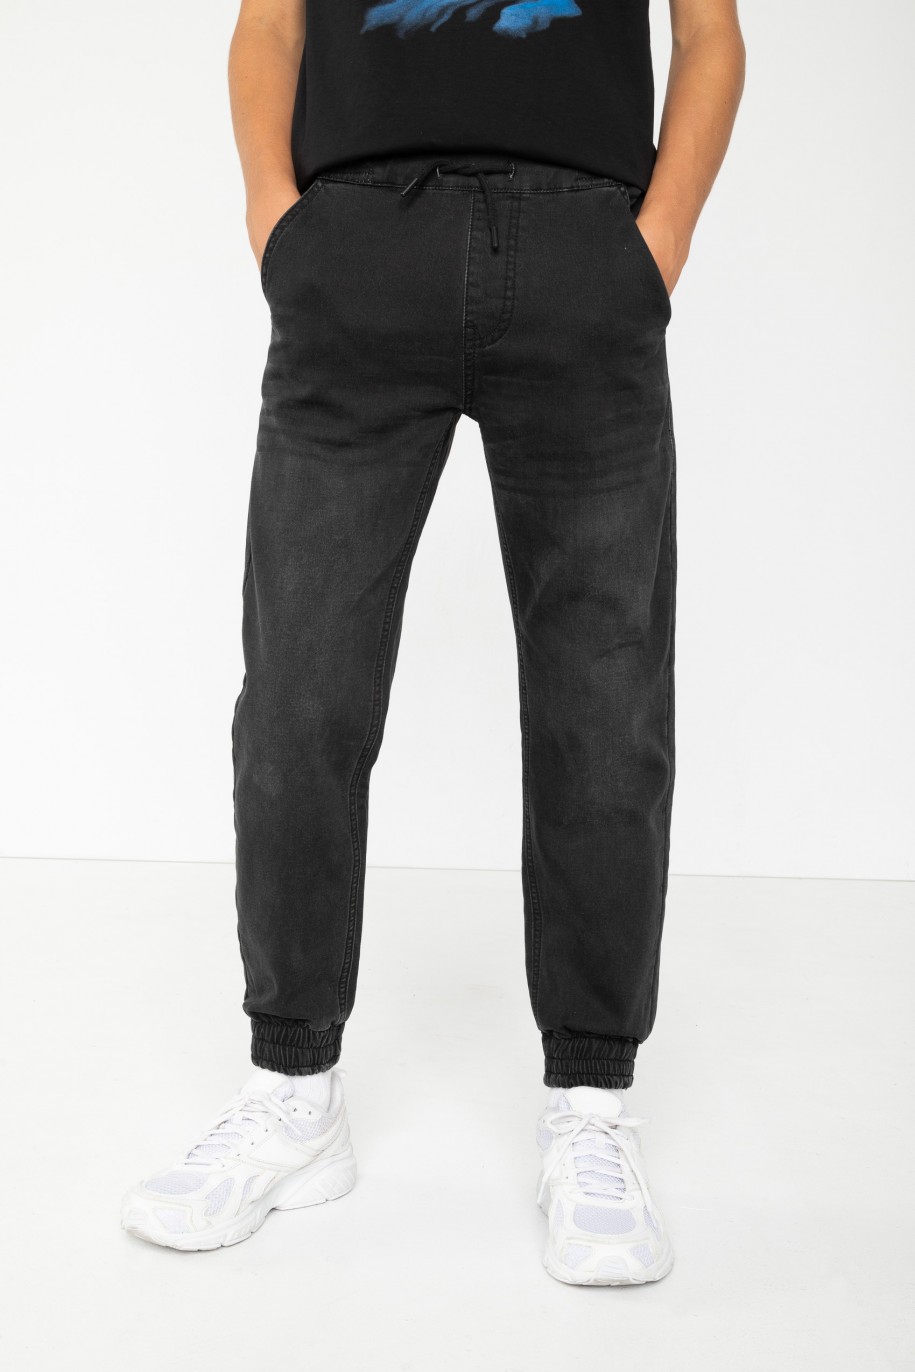 Czarne jeansowe spodnie joggery - 44518